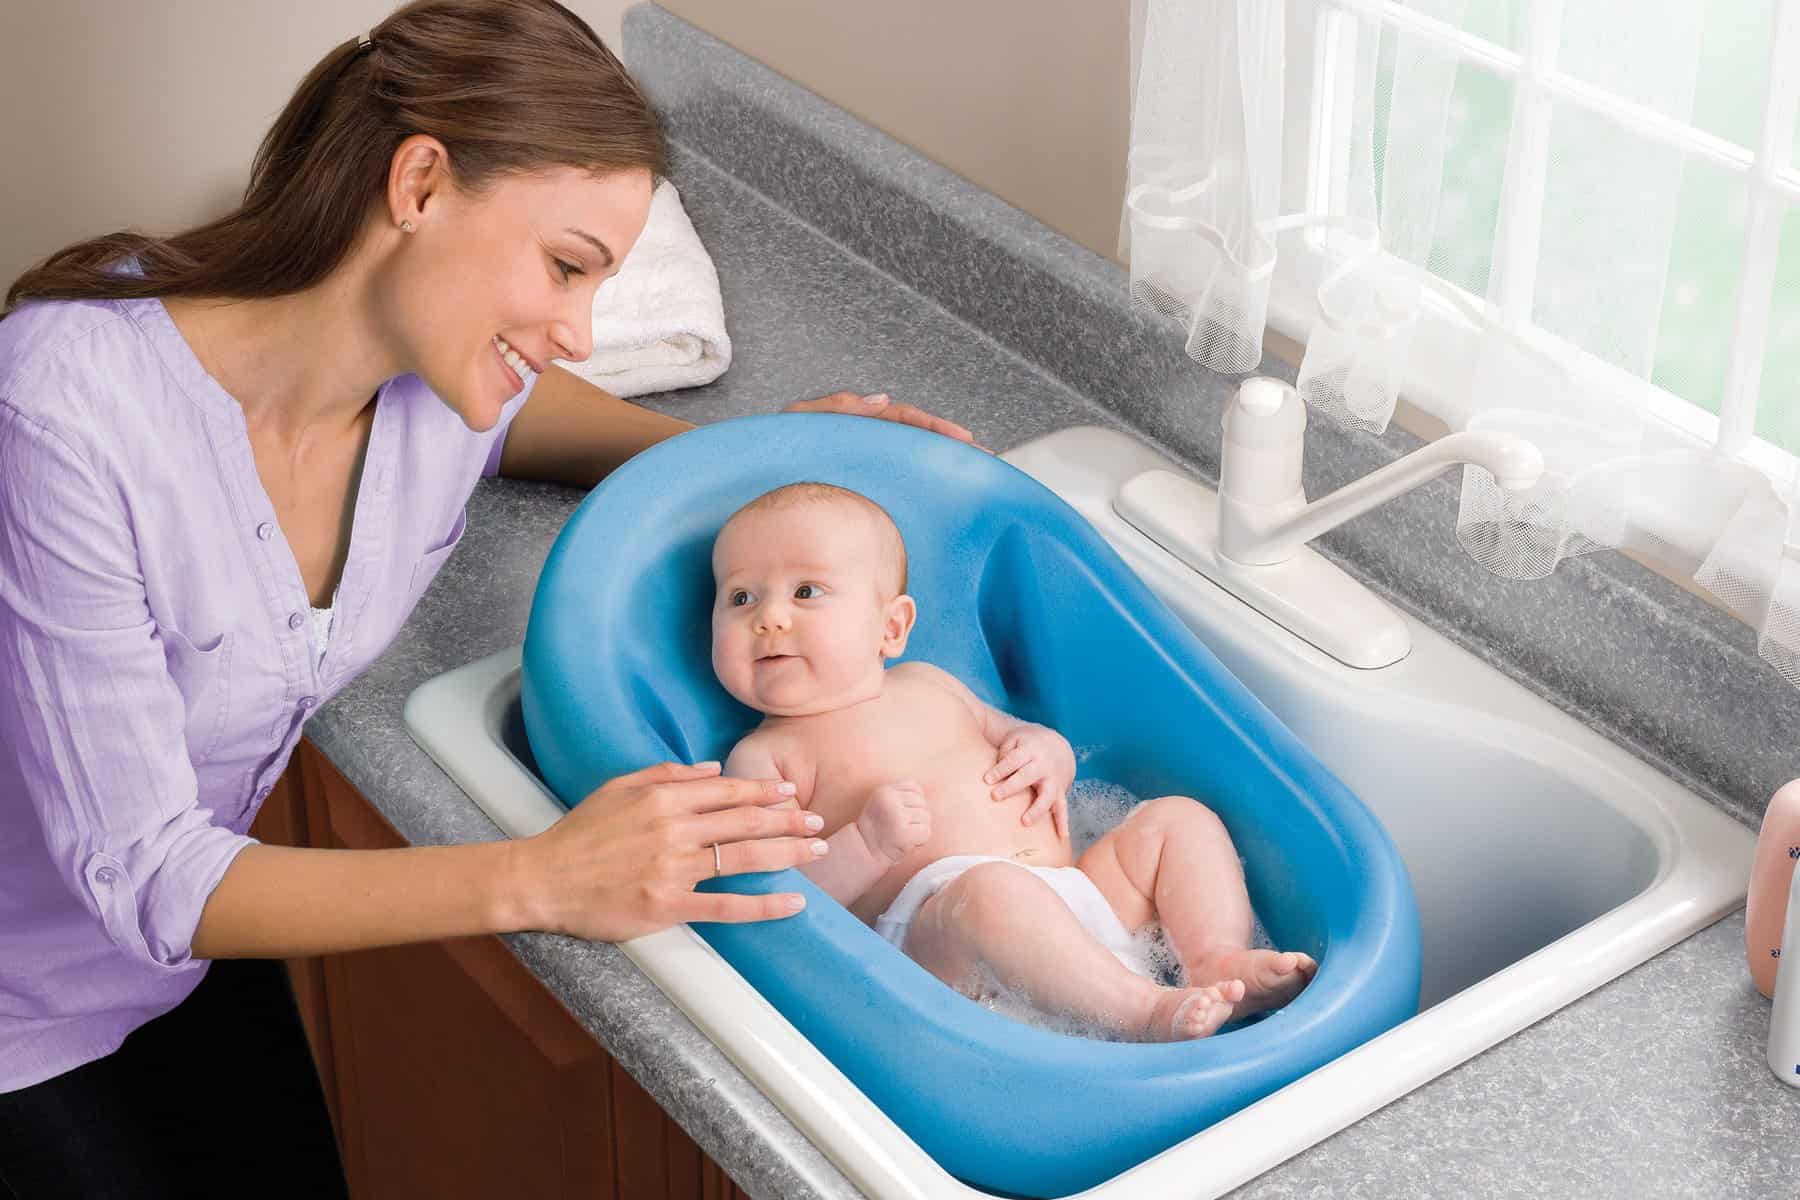 baby bath tub fits kitchen sink